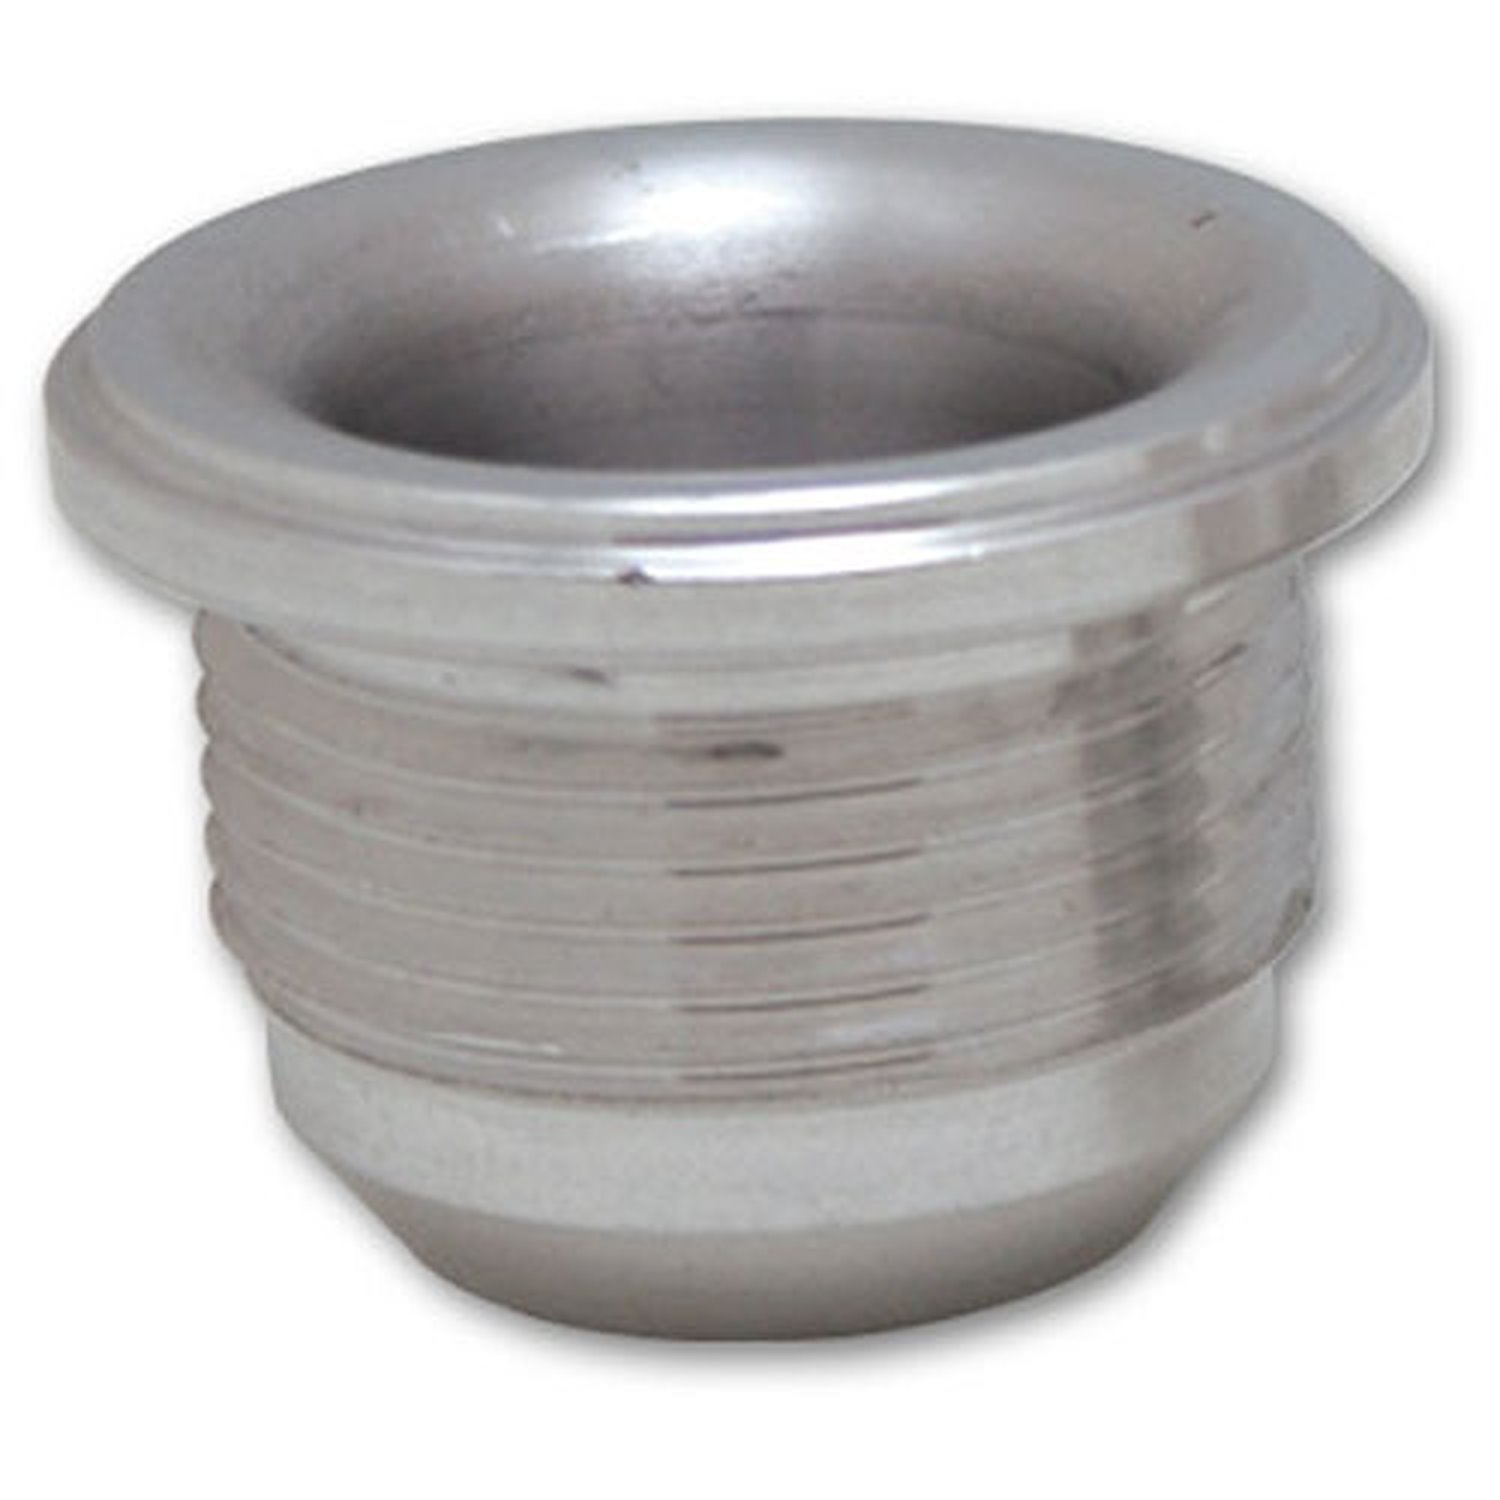 Male -4AN Aluminum Weld Bung 7/16" - 20 SAE Thread